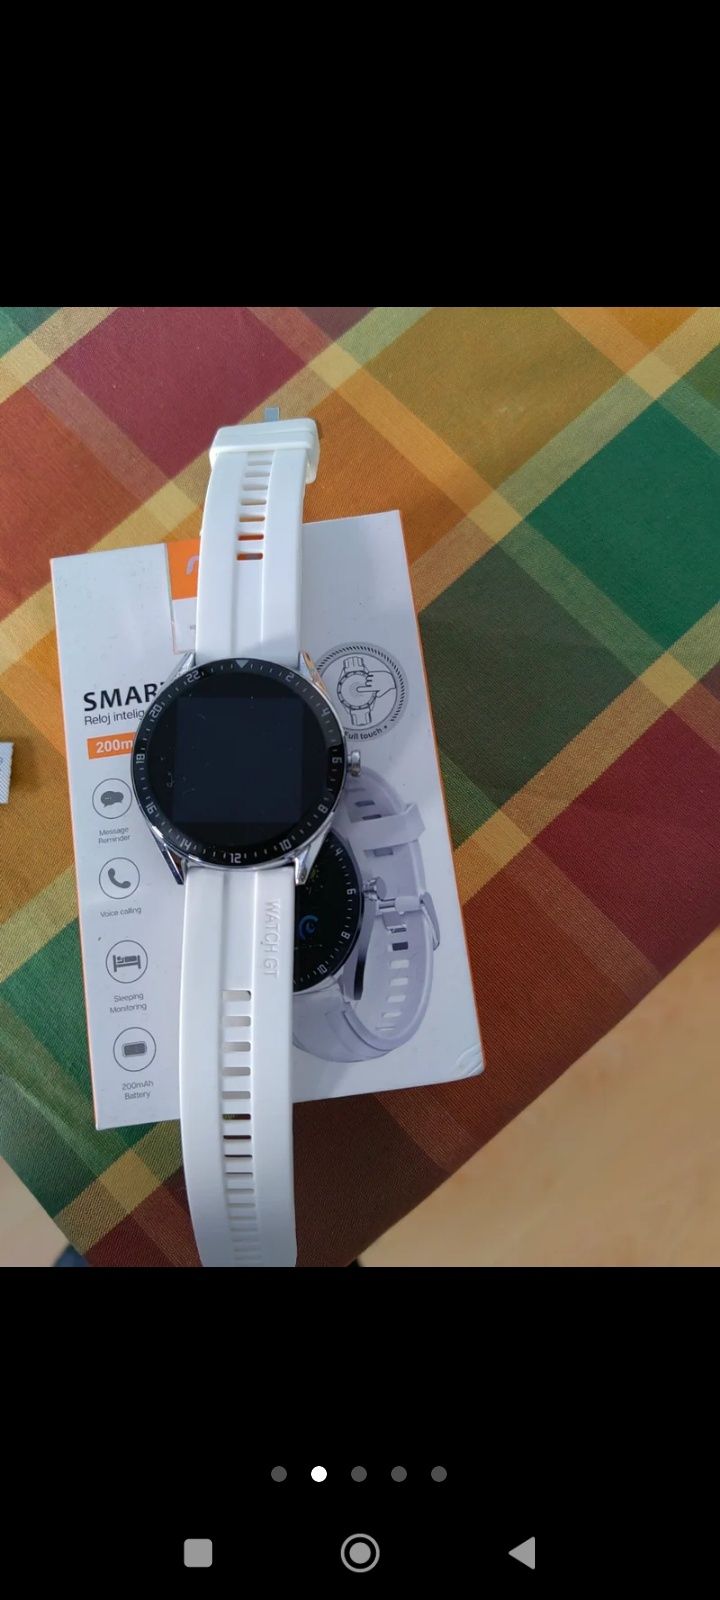 Smartwatch novo em caixa